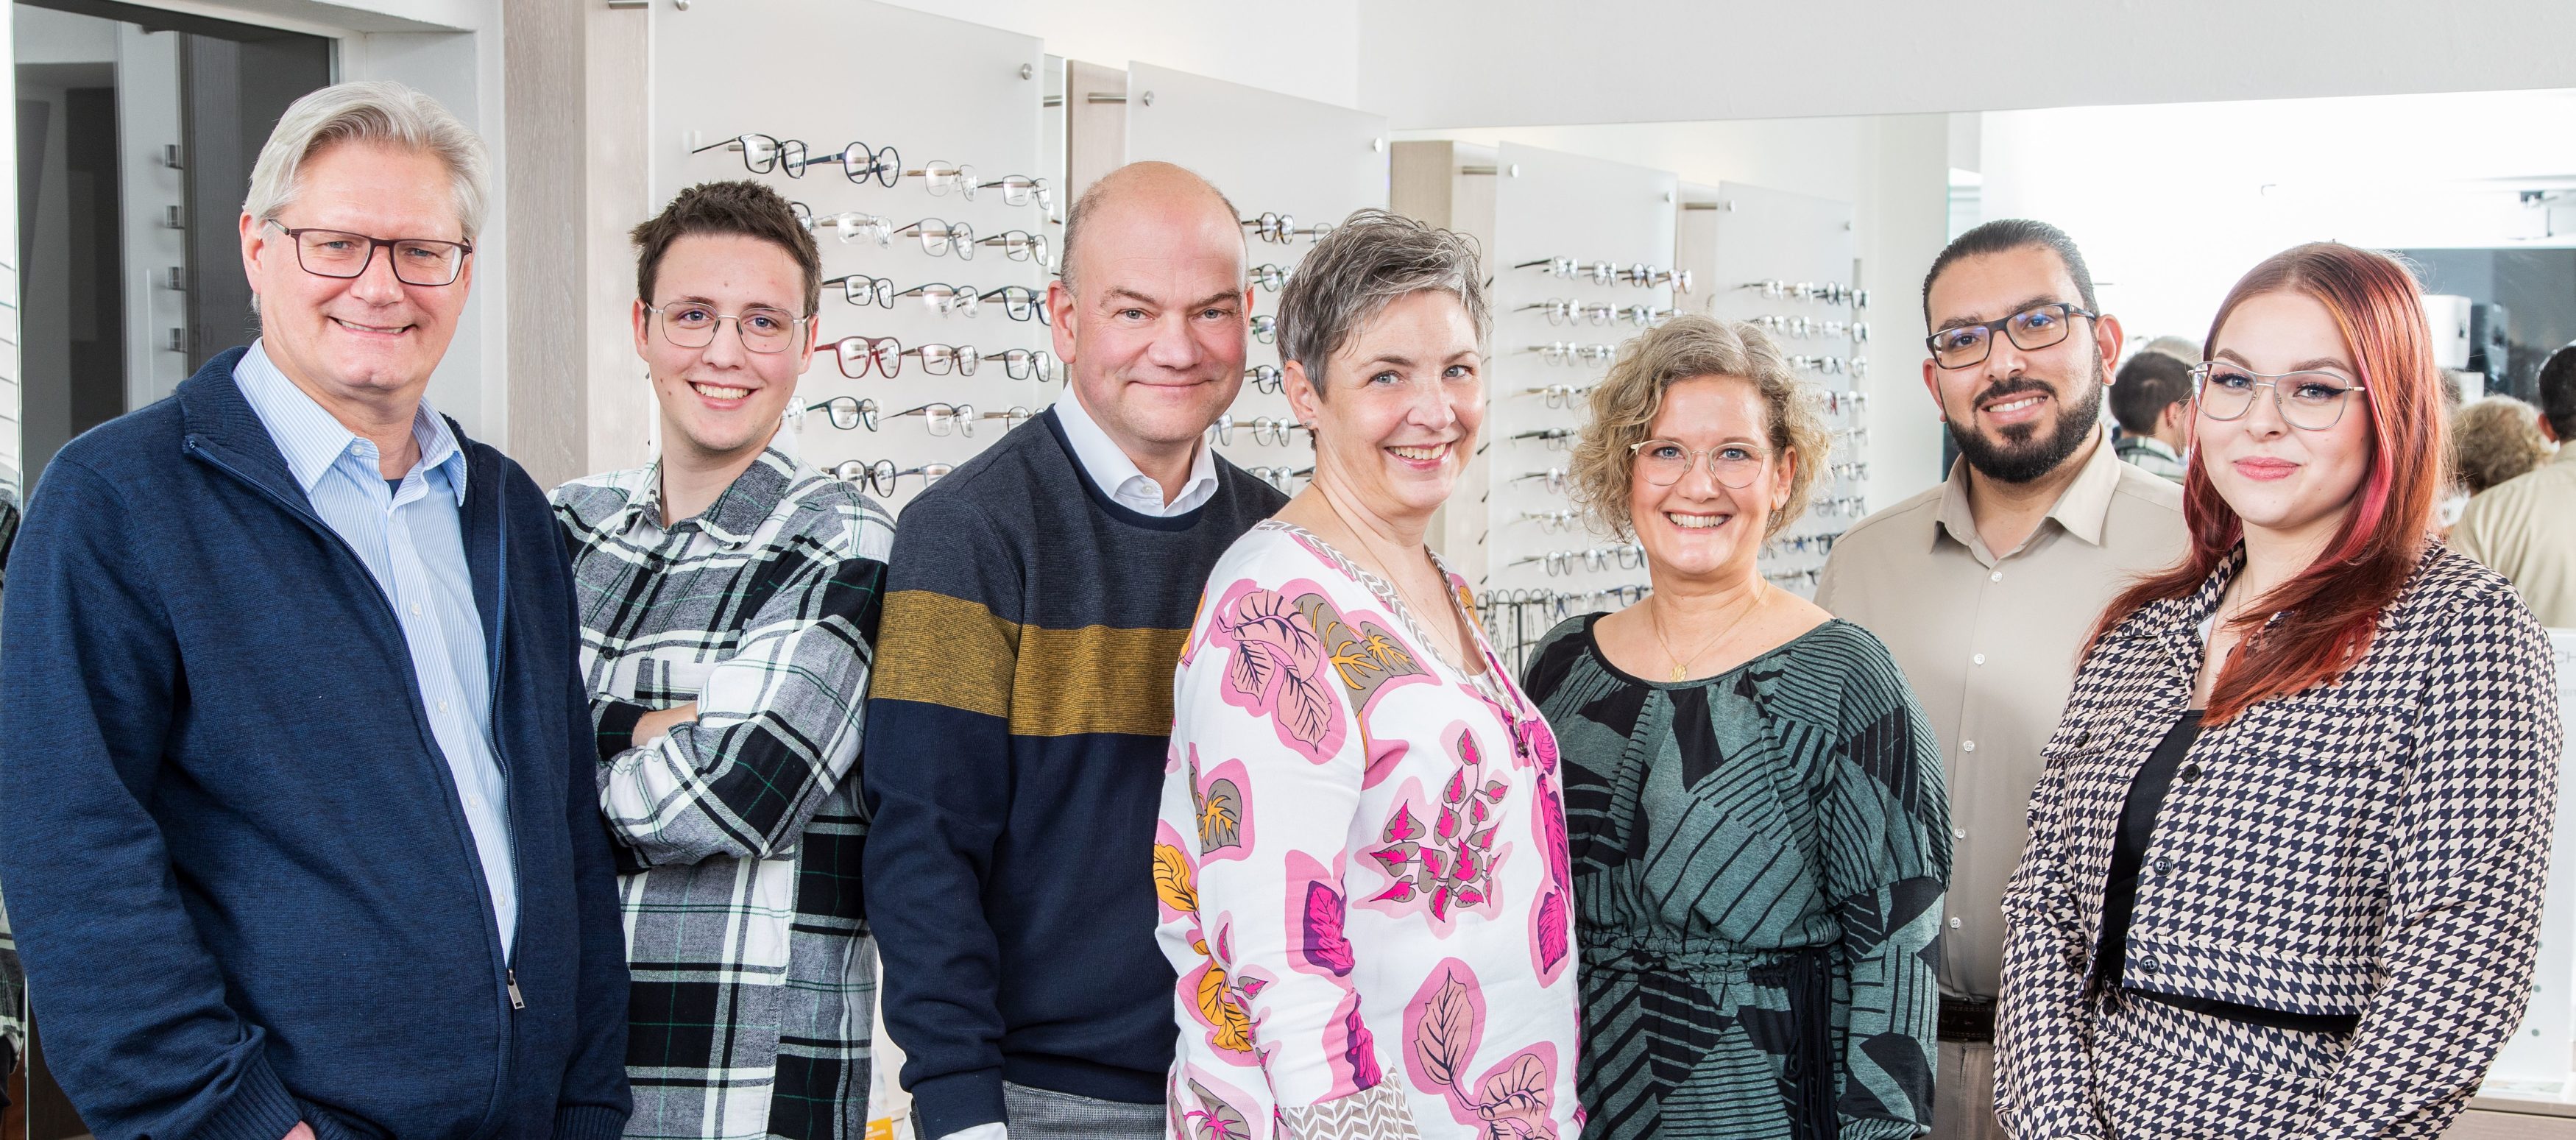 OPTIK WOLF  Ihr zuverlässiger Optiker in Bensberg auf der Schloßstraße